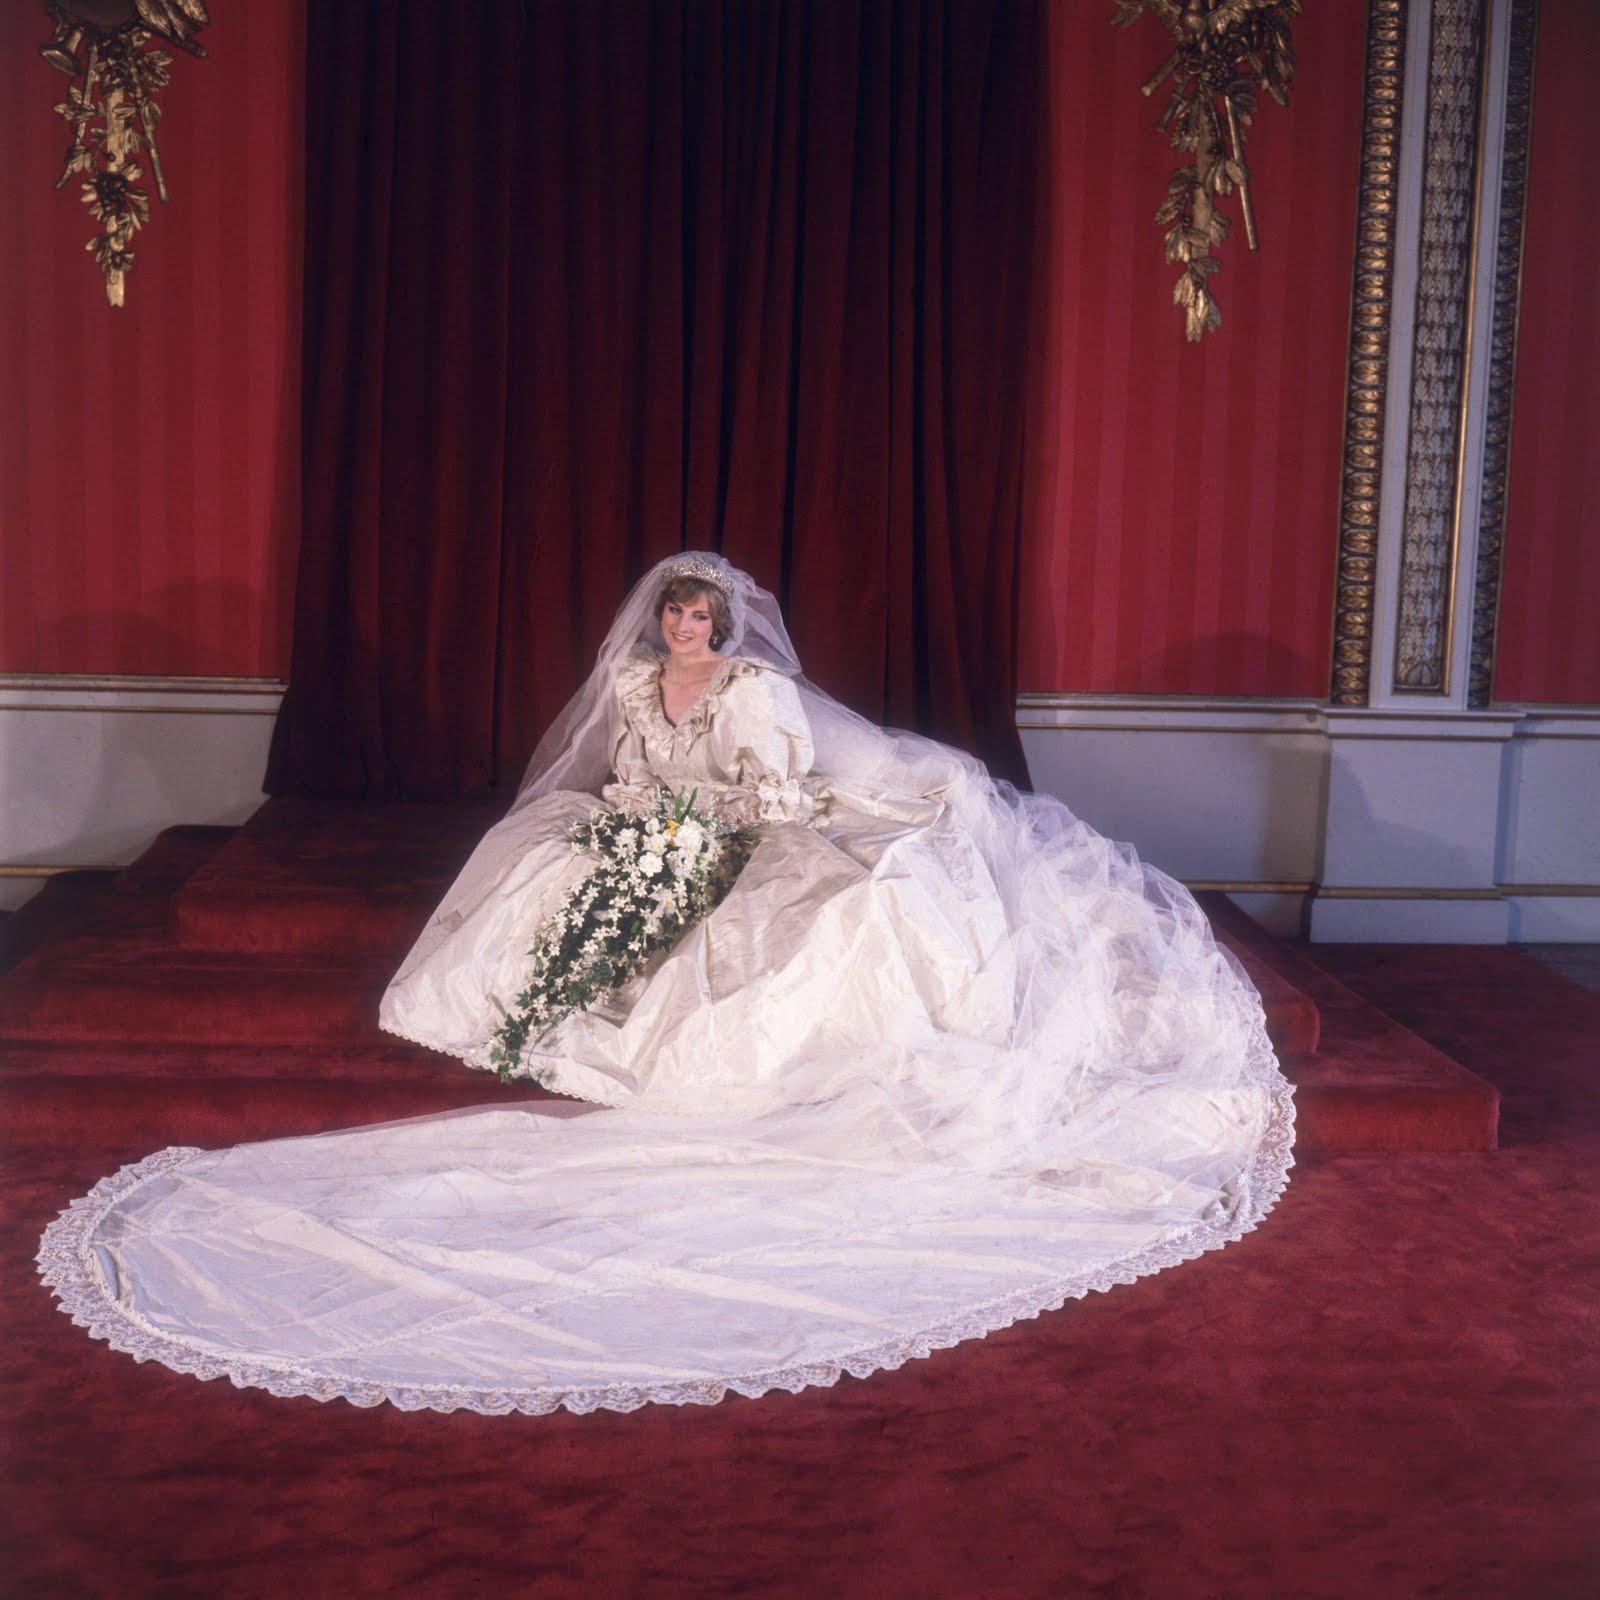 http://4.bp.blogspot.com/-Y8IGD8_bCEc/Tkf0tIwaTuI/AAAAAAAAD4M/_1Ck2TqeUUs/s1600/1981-Princess-Diana-wedding-dress-3239308.jpg